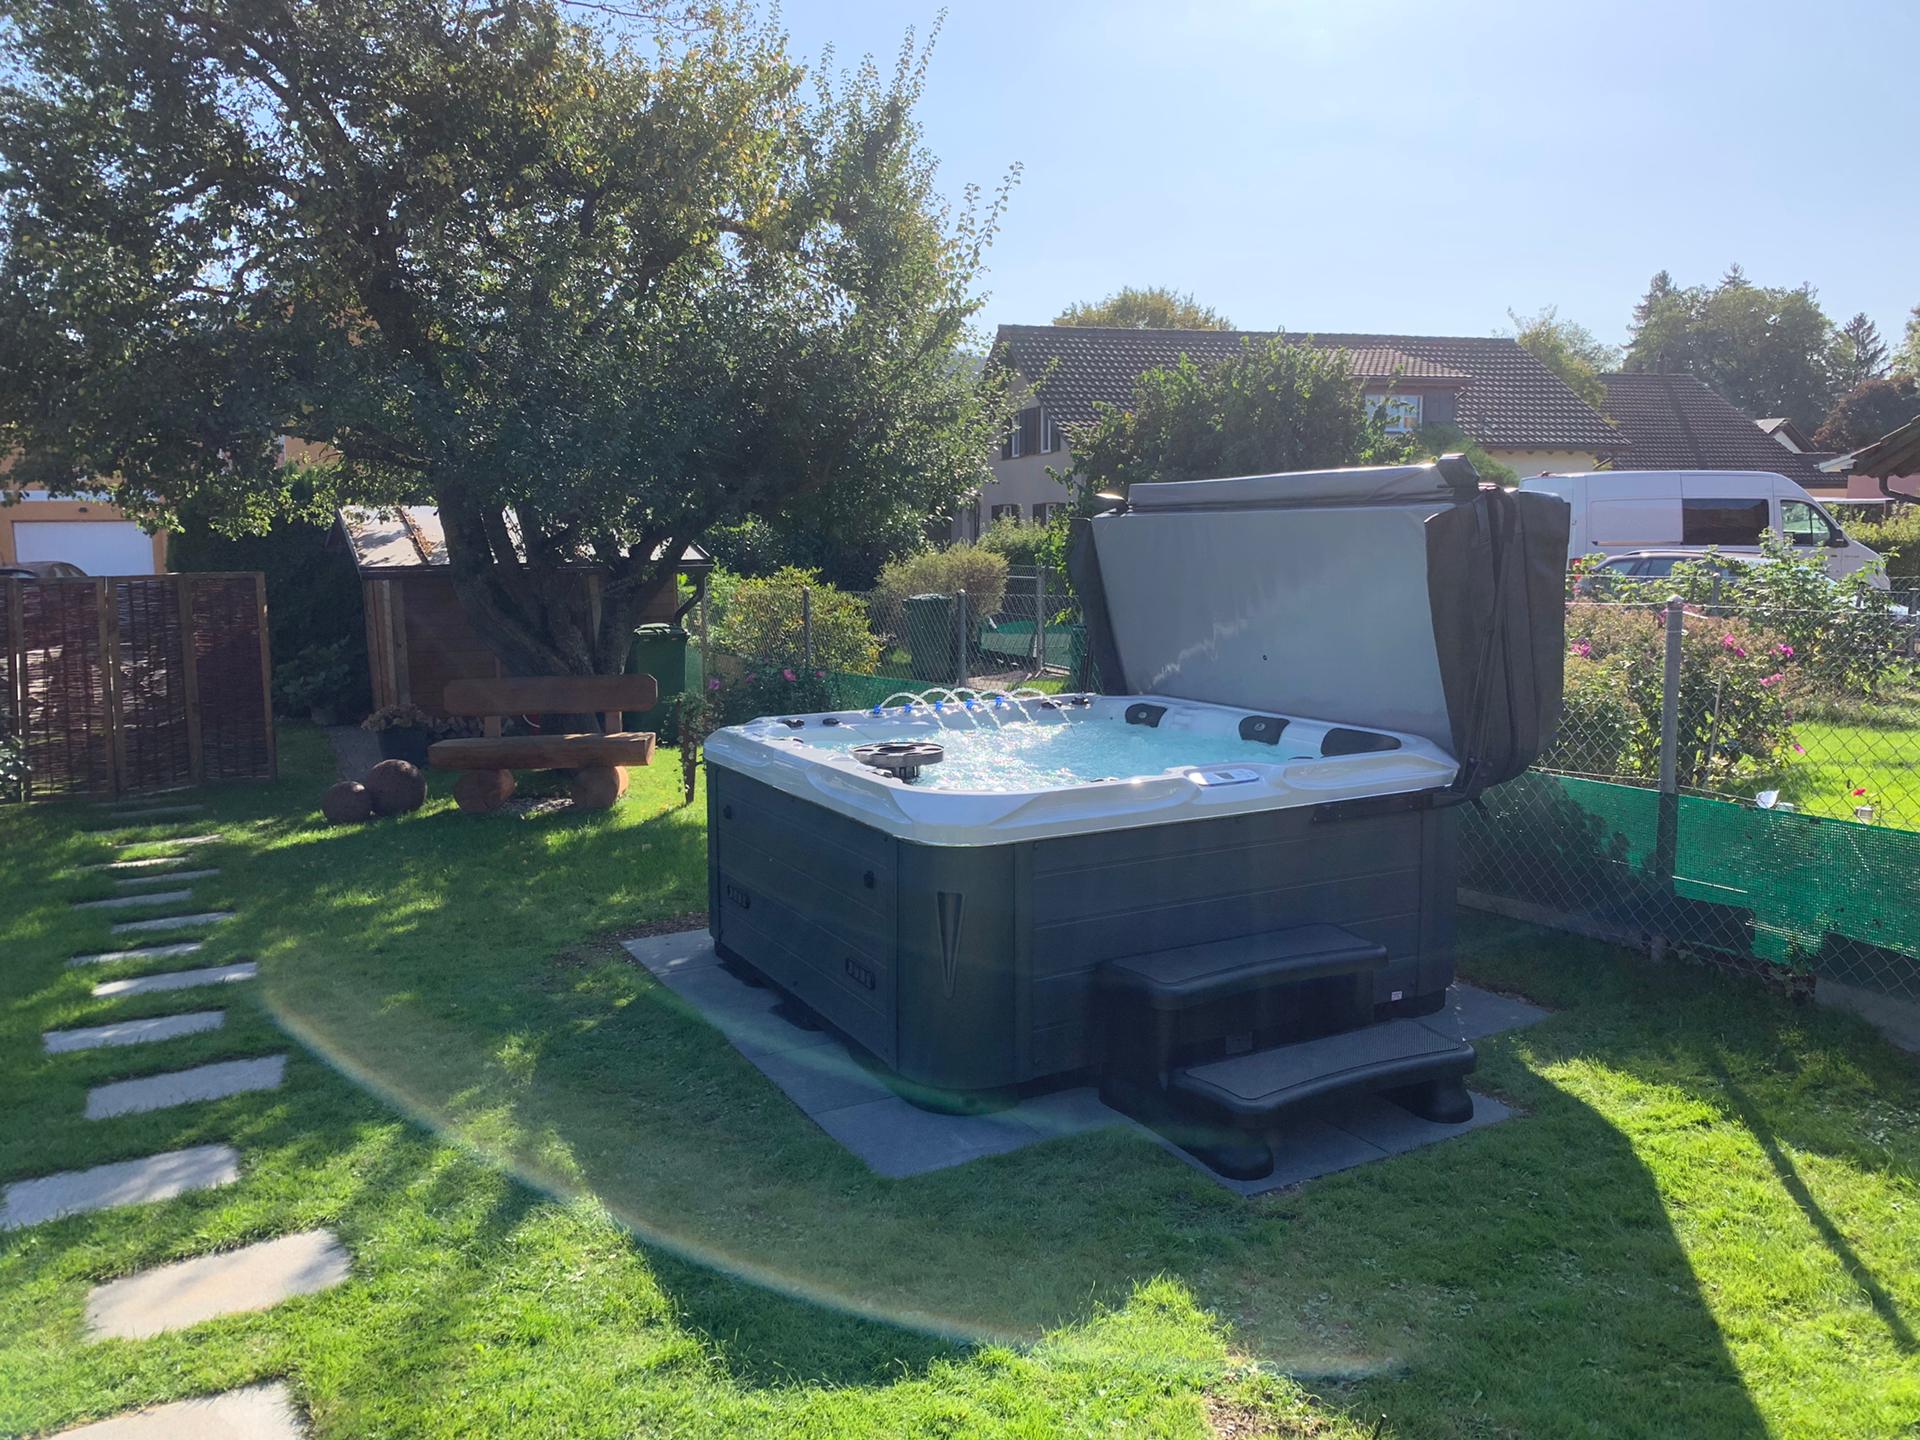 Phoenix 2019 Aargau- Referenz für Whirlpool in Garten